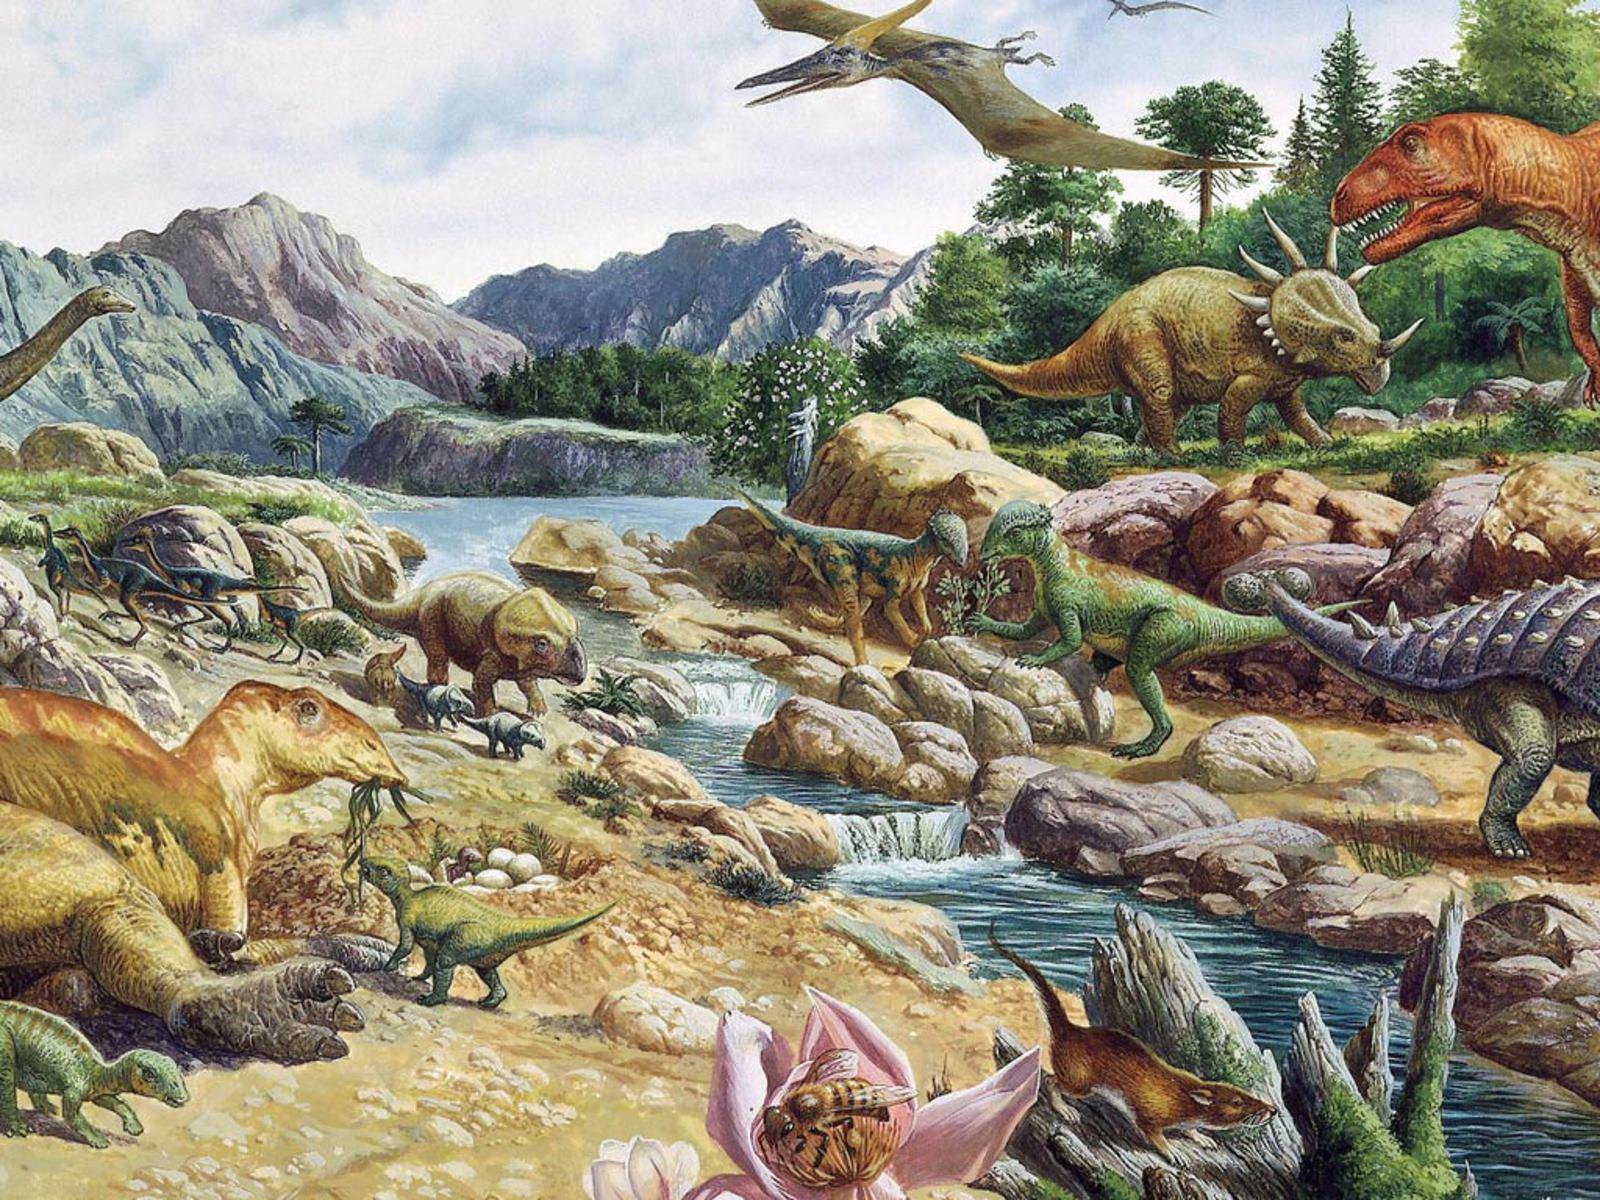 Wallpaper For > Dinosaur Wallpaper For Desktop